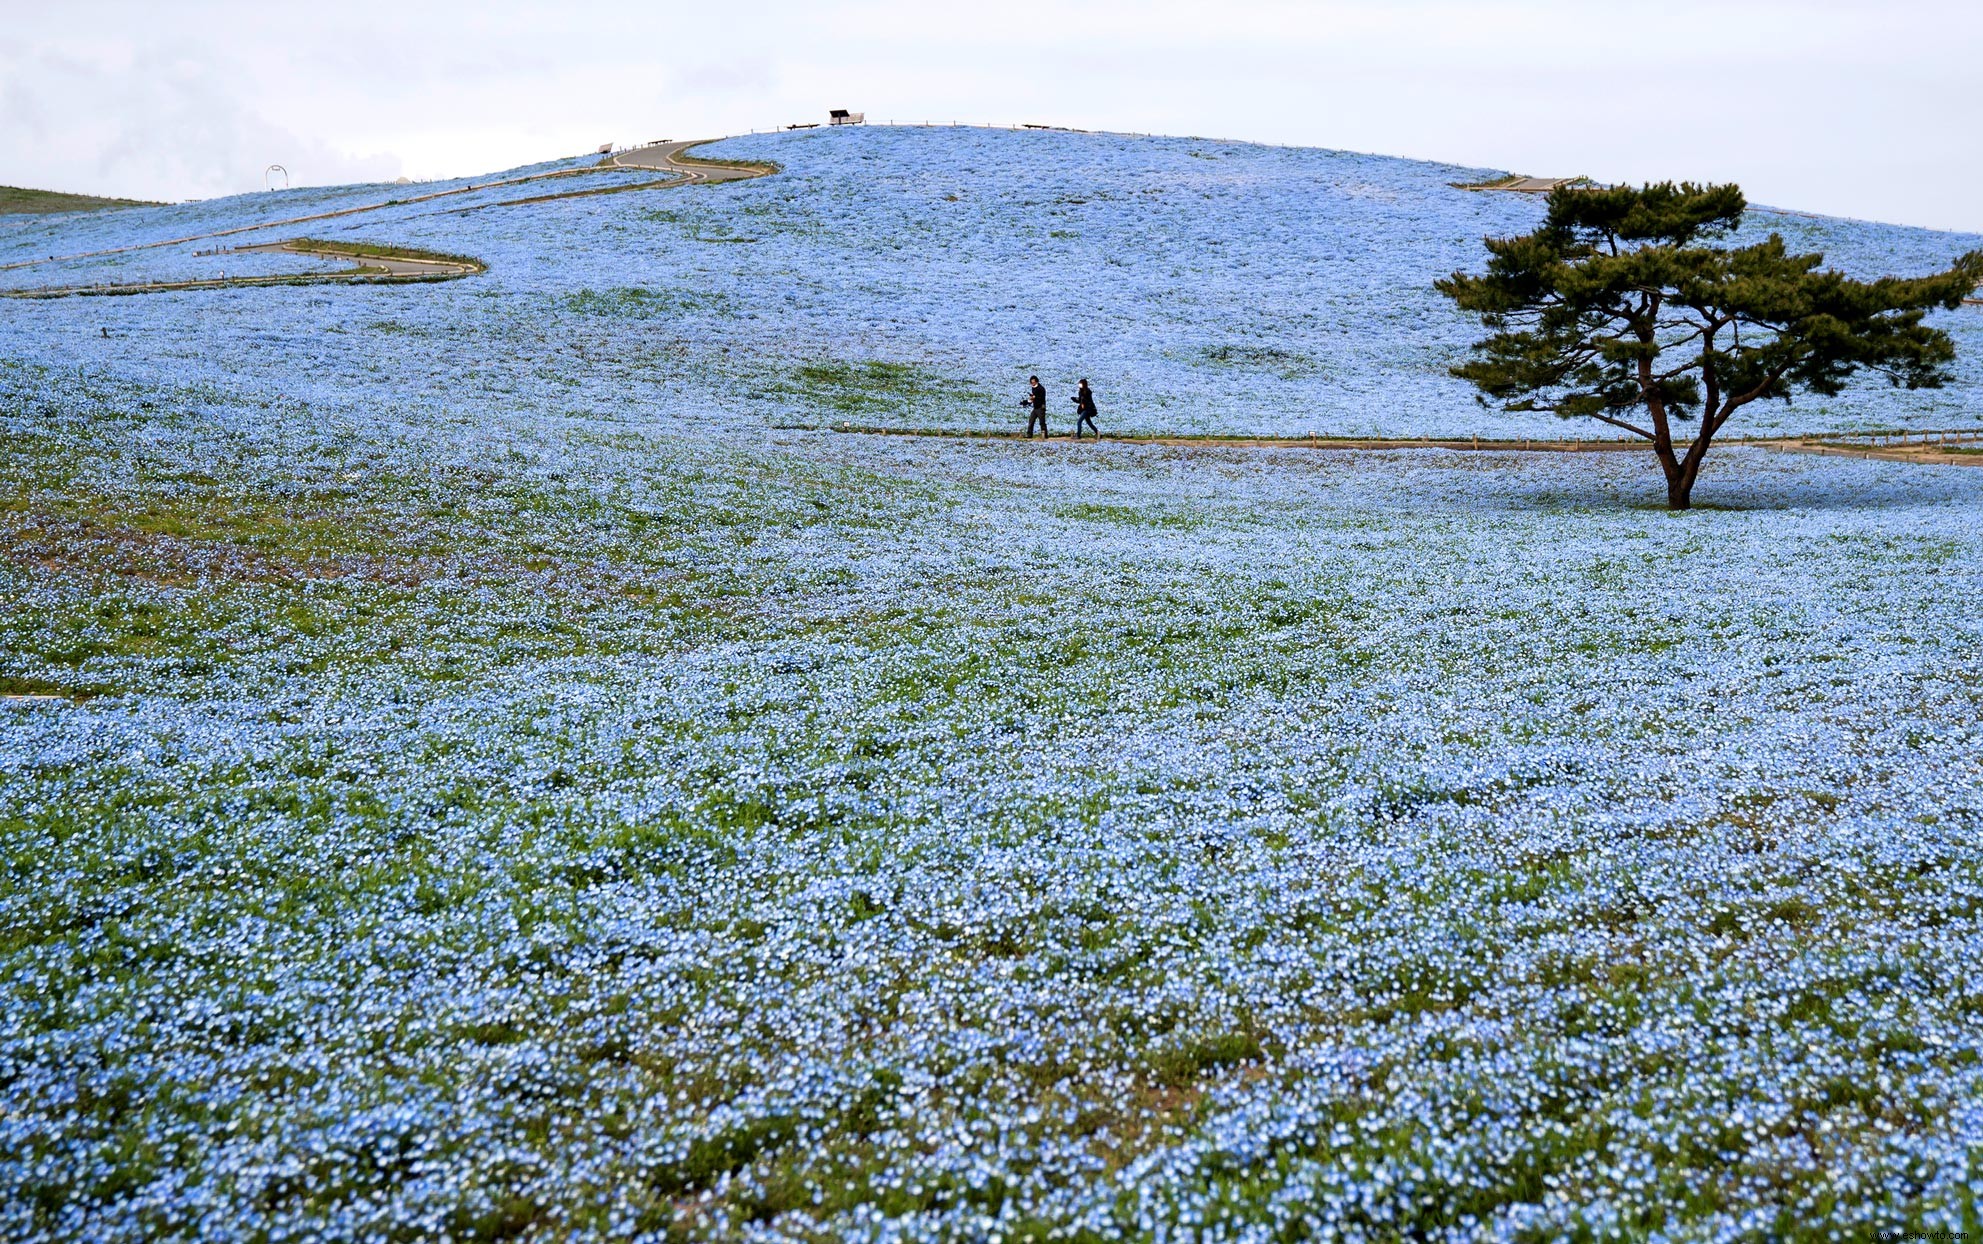 Millones de flores azules florecen en este parque japonés y las fotos son asombrosas 